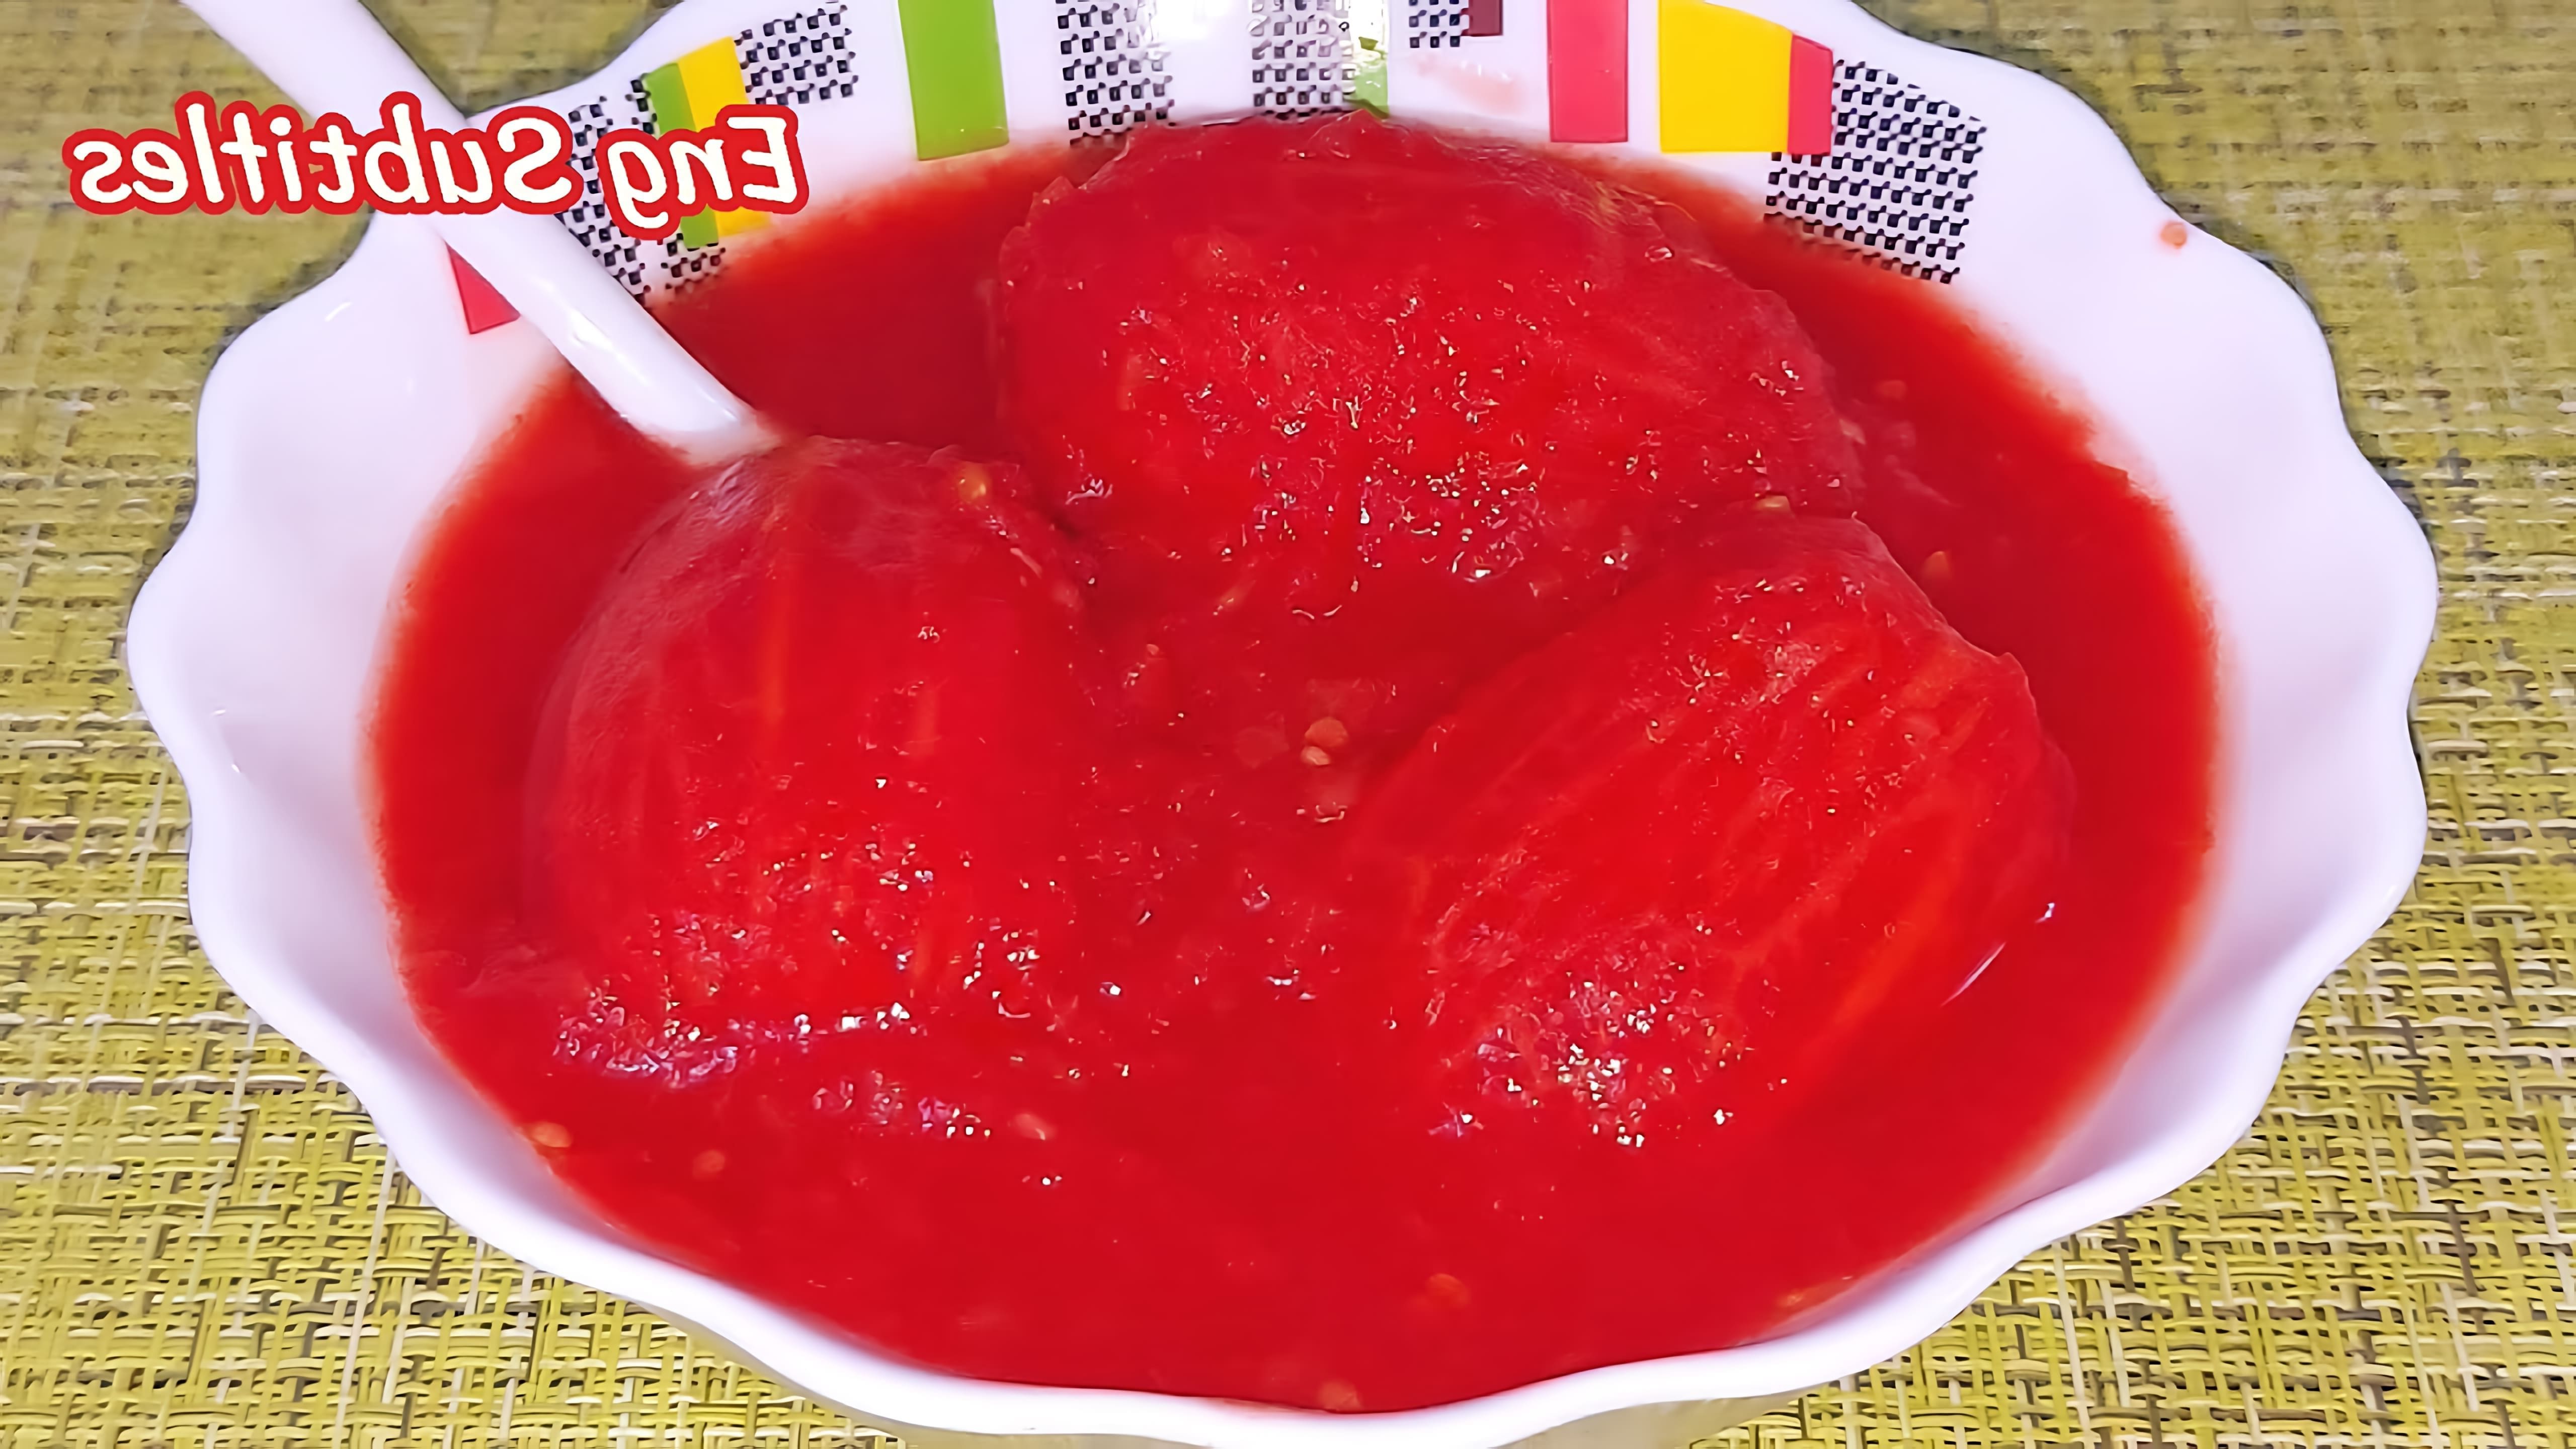 В этом видео-ролике рассказывается о том, как правильно заготавливать помидоры в собственном соку на зиму